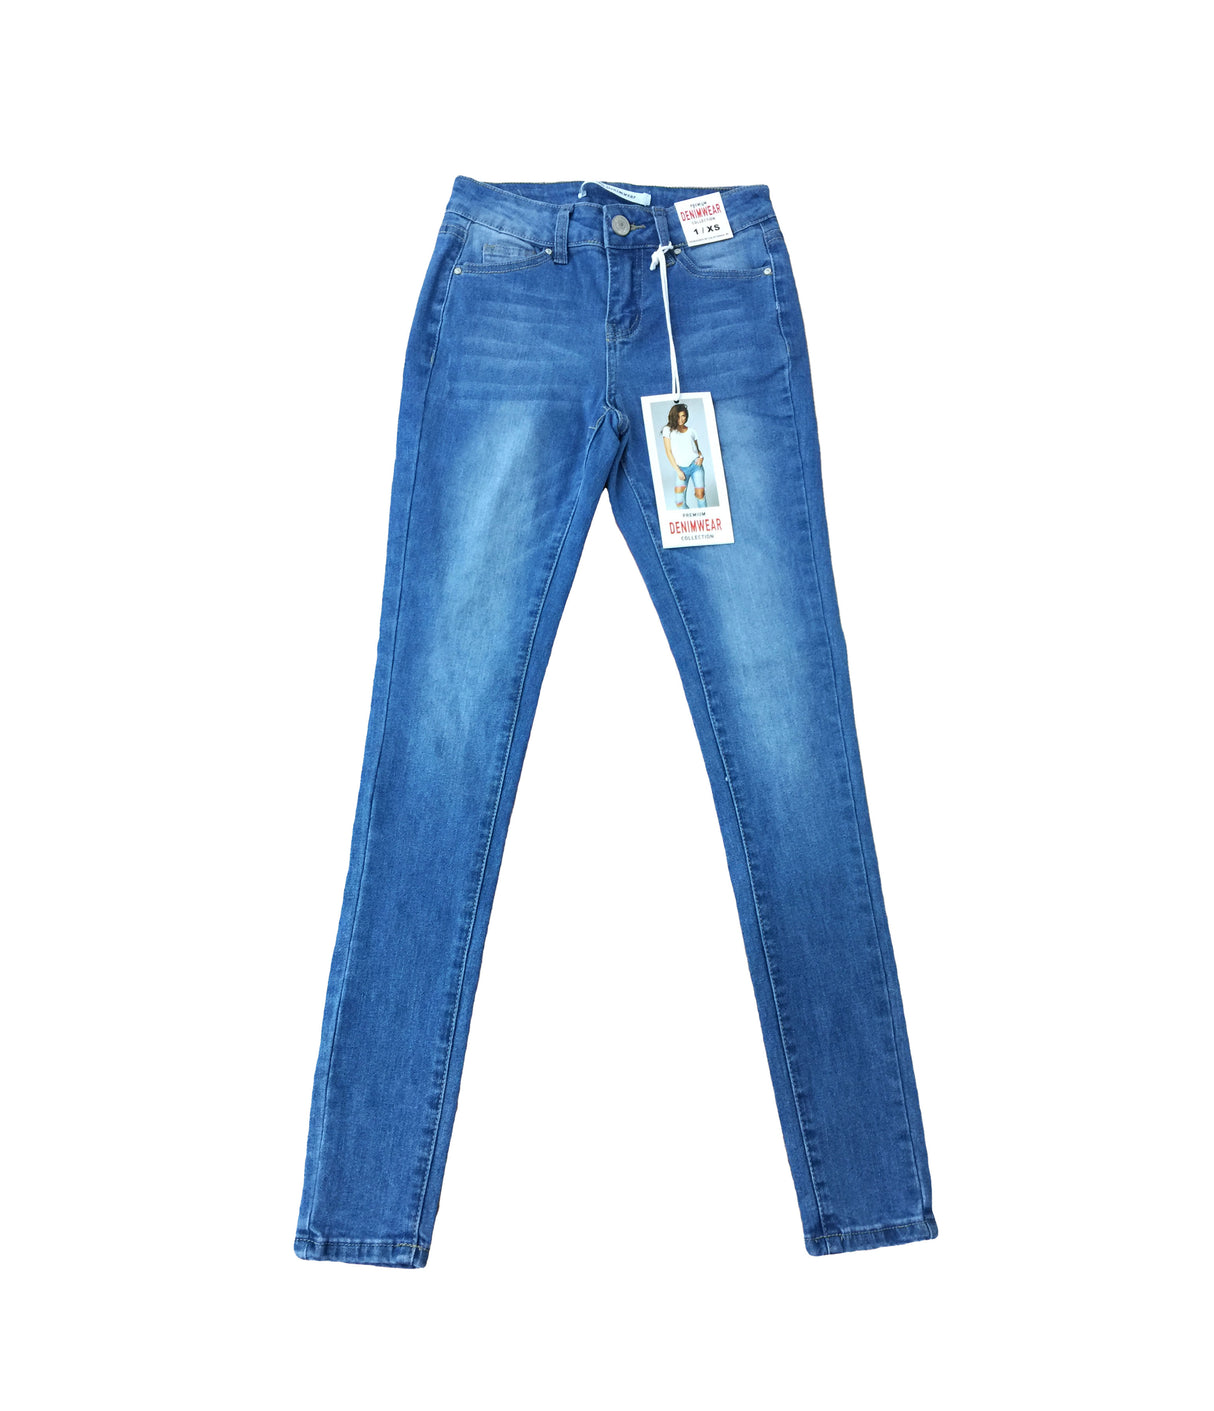 Denimwear, Women's Jeans